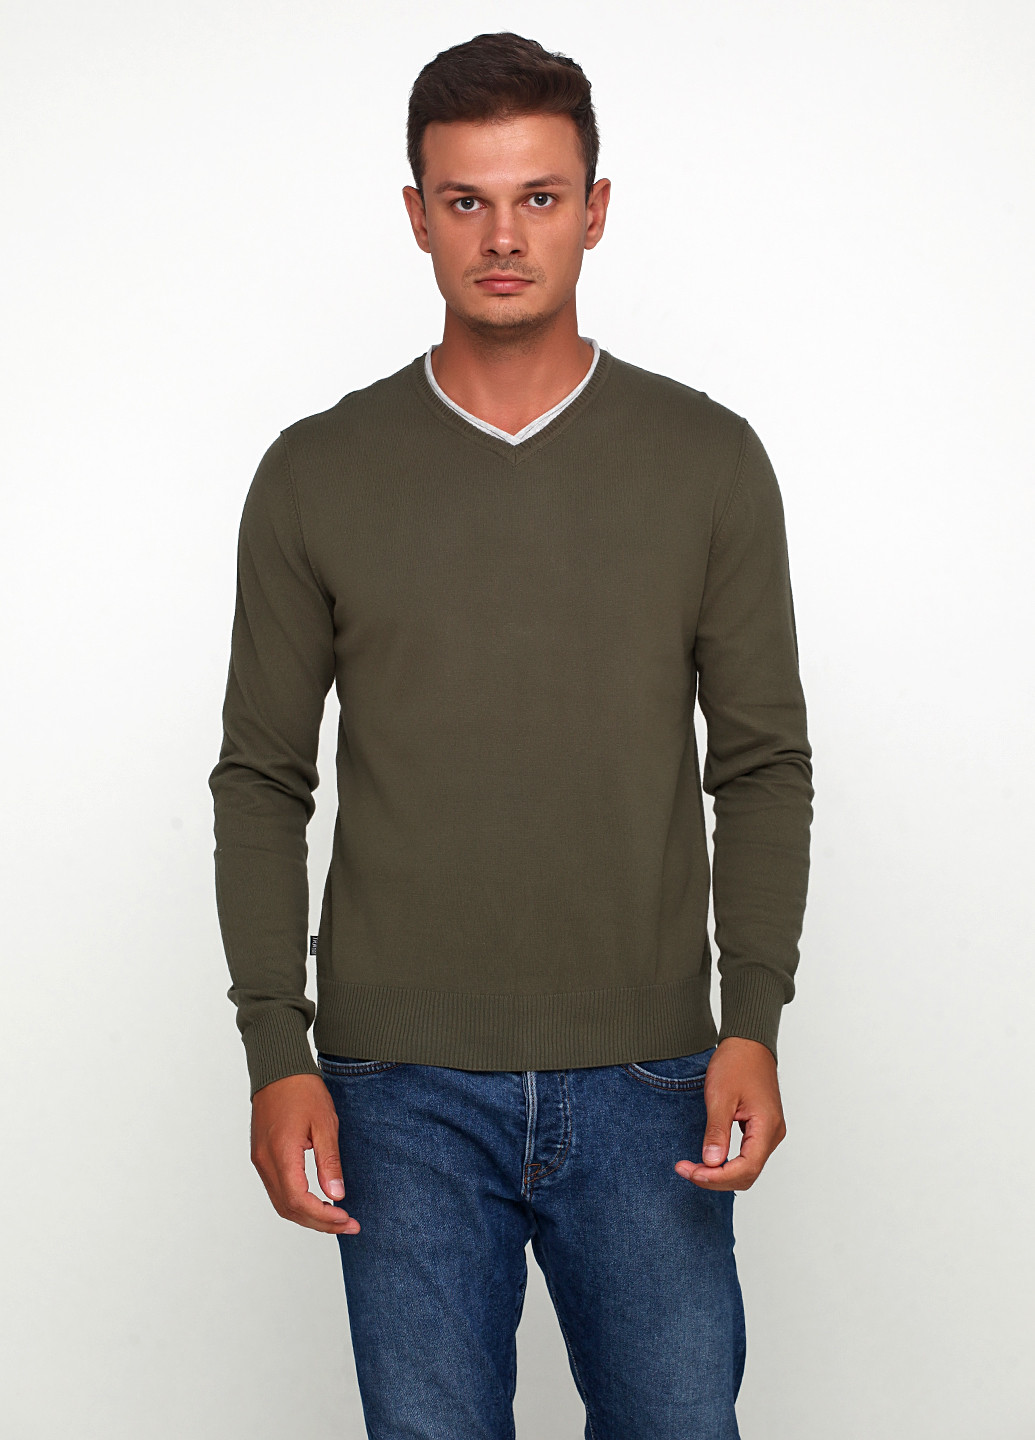 Оливковый (хаки) демисезонный джемпер пуловер Terranova